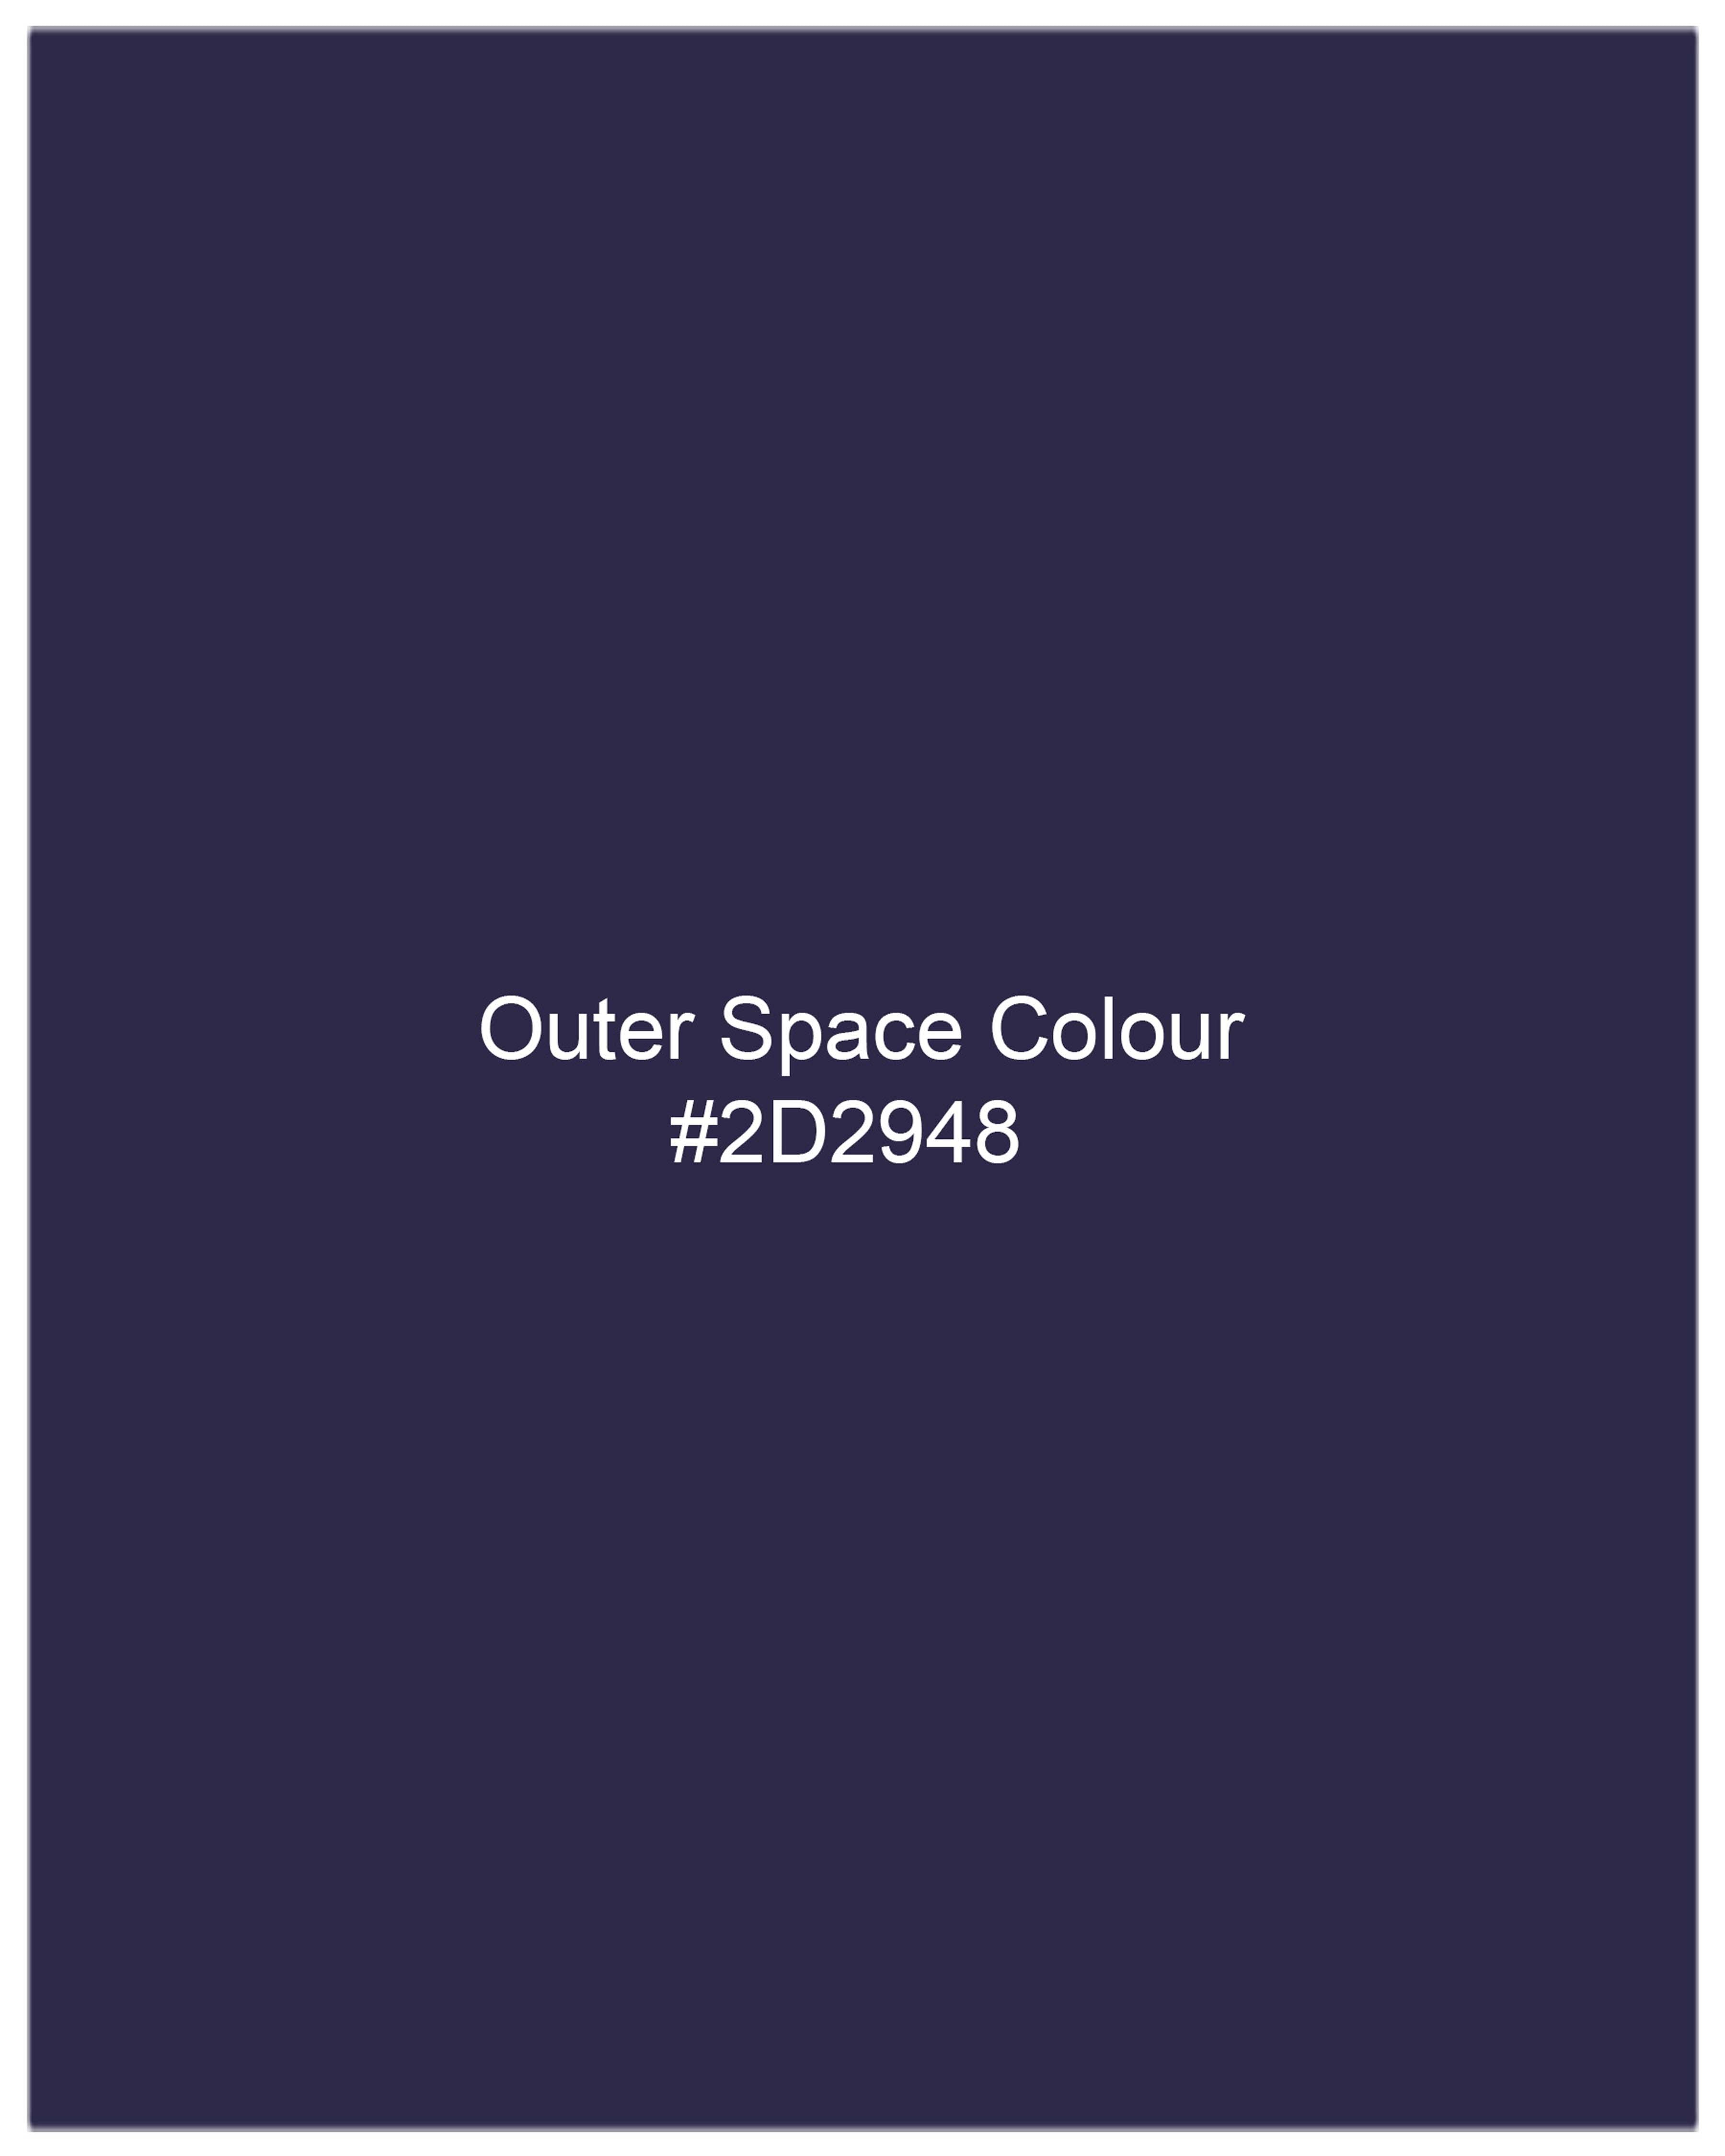 Outer Space Blue Waistcoat V2076-36, V2076-38, V2076-40, V2076-42, V2076-44, V2076-46, V2076-48, V2076-50, V2076-52, V2076-54, V2076-56, V2076-58, V2076-60